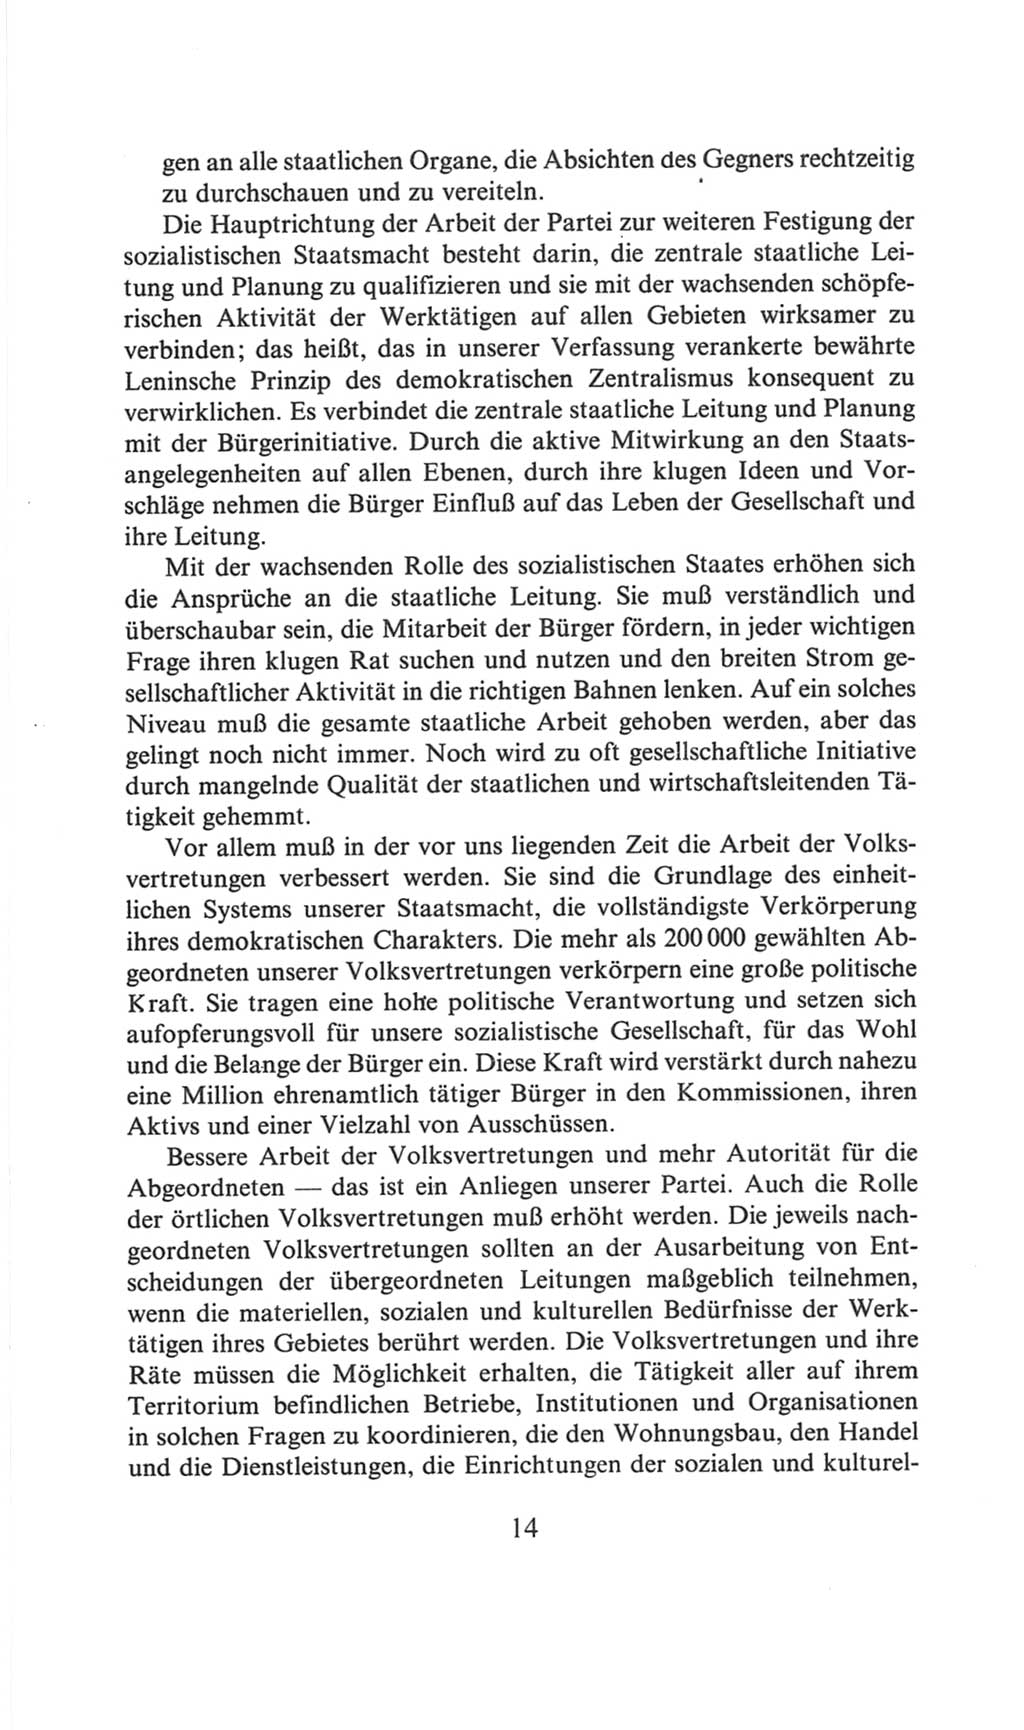 Volkskammer (VK) der Deutschen Demokratischen Republik (DDR), 6. Wahlperiode 1971-1976, Seite 14 (VK. DDR 6. WP. 1971-1976, S. 14)